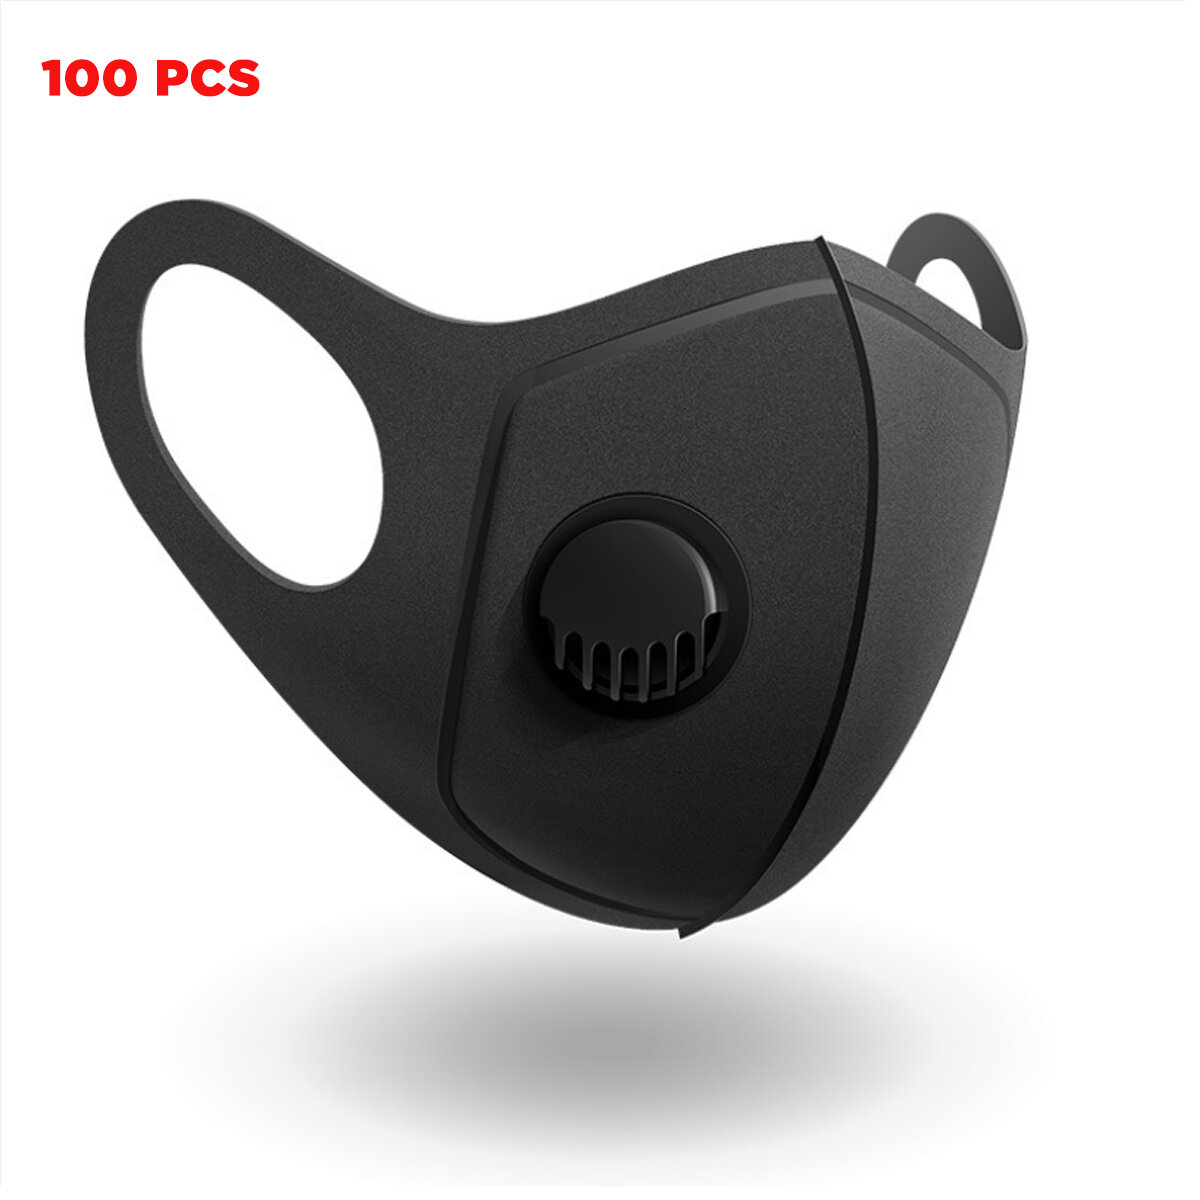 100 Stück PM2.5 Gesichtsmasken für Camping, Reisen, Radfahren mit dreischichtigem Filter, atmungsaktiv, staubdicht, Mundmaske